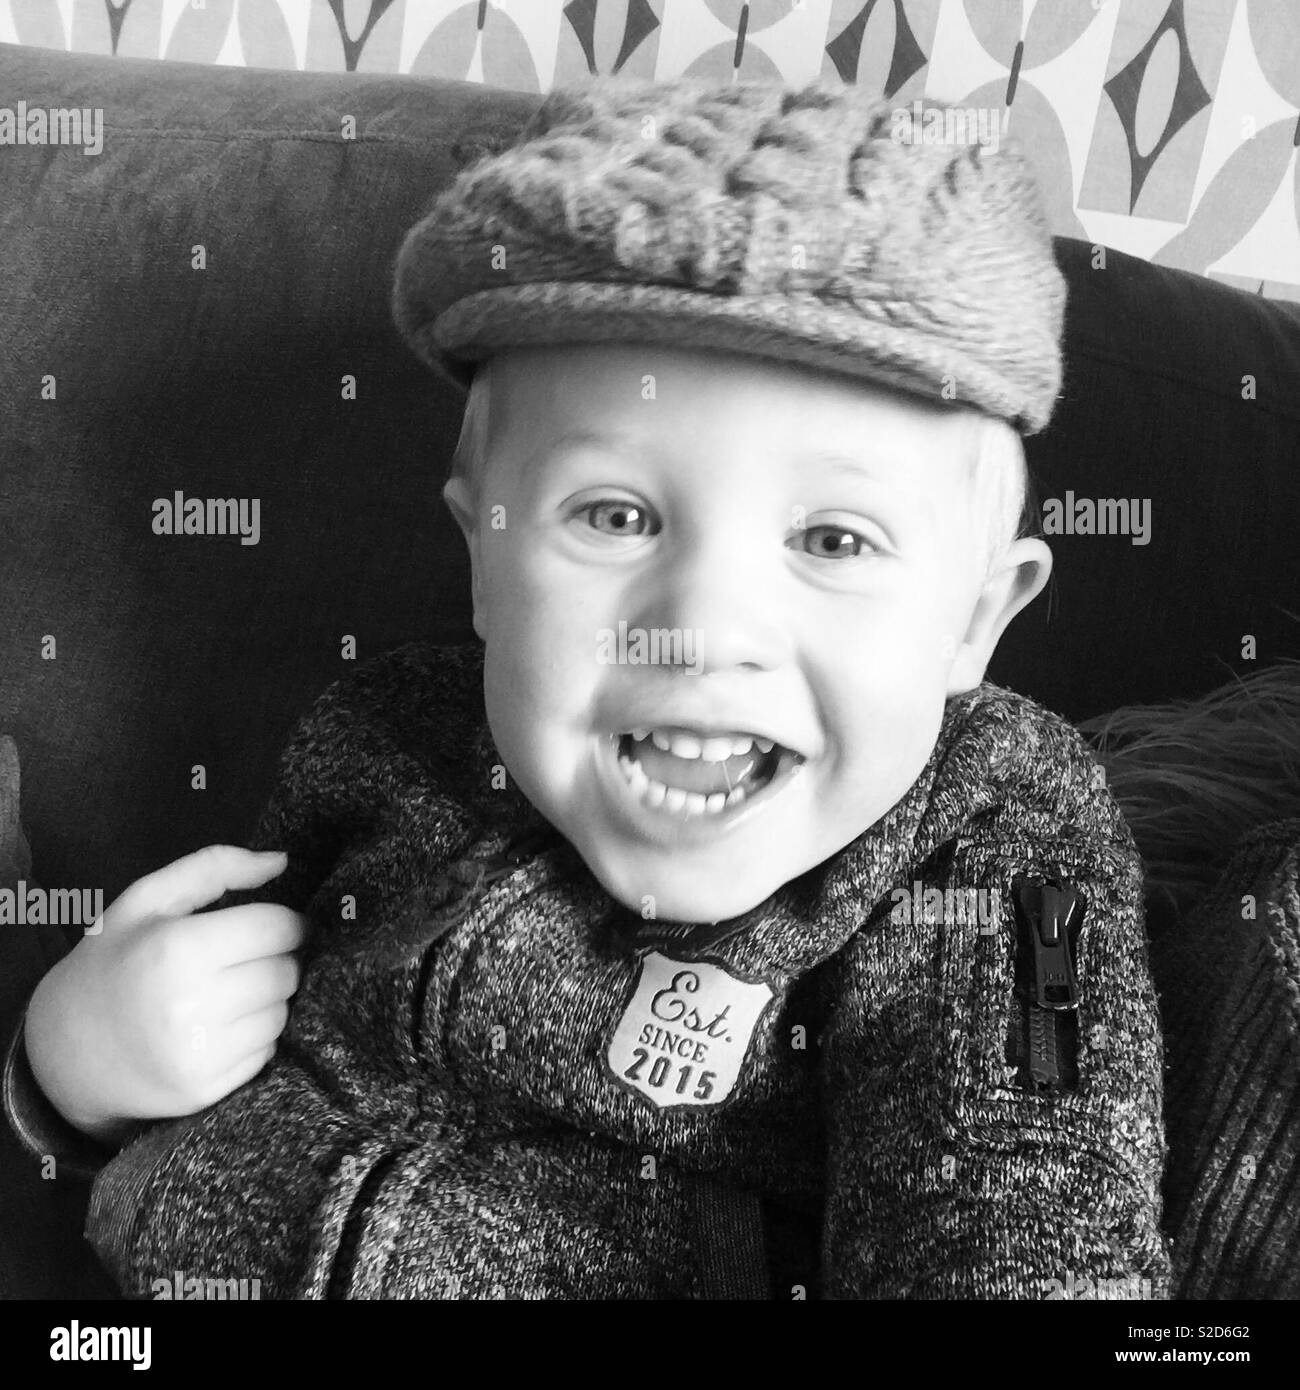 Toddler wearing flat cap smiling cheekily Stock Photo